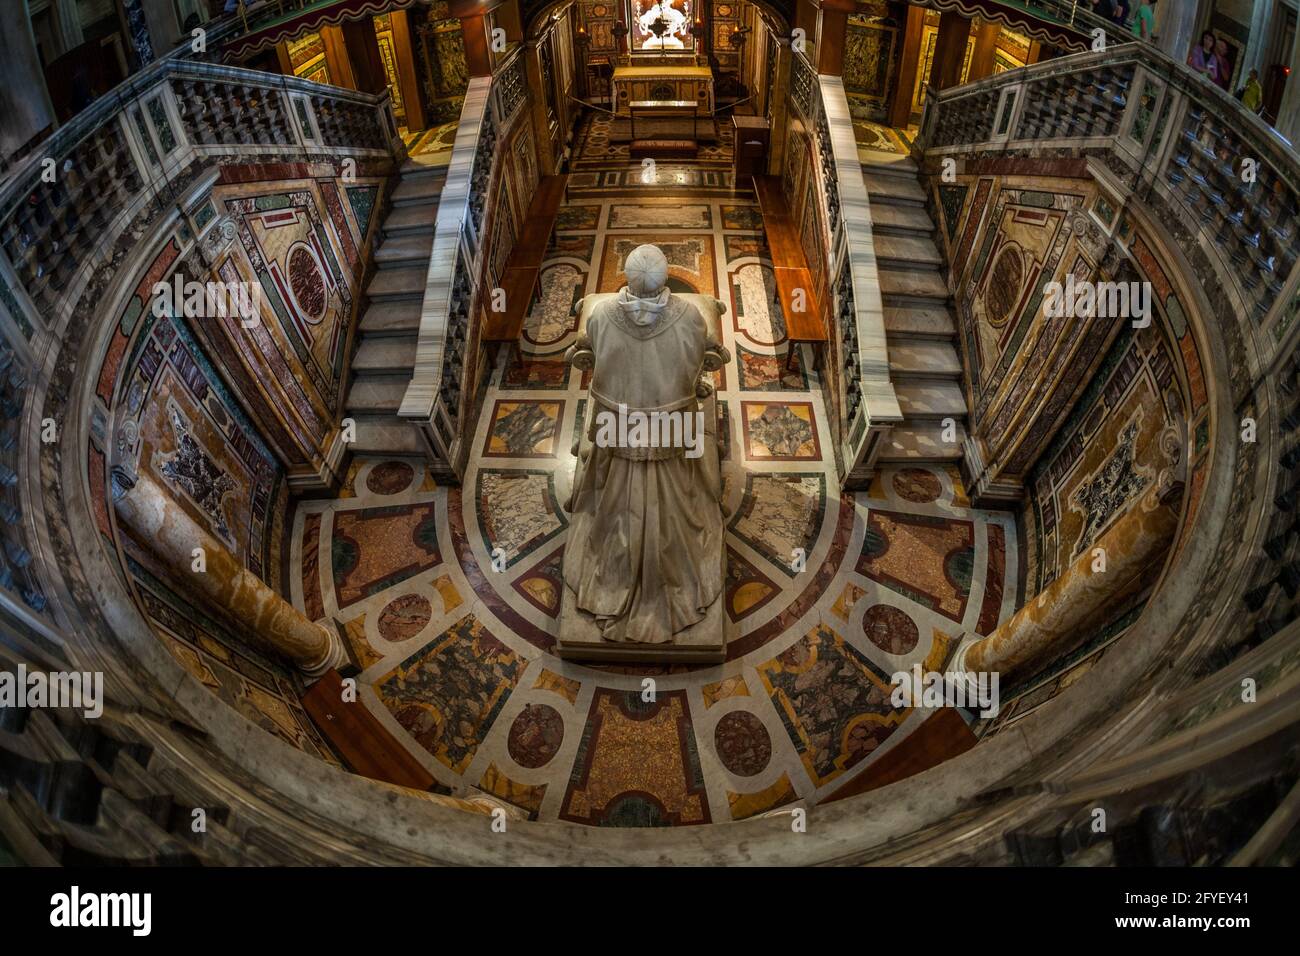 El altar mayor de la Basílica de Santa Maria Maggiore en Roma, con la reliquia sagrada La Santa Cuna y una escultura del Papa Pío IX de Giuseppe Valadie Foto de stock